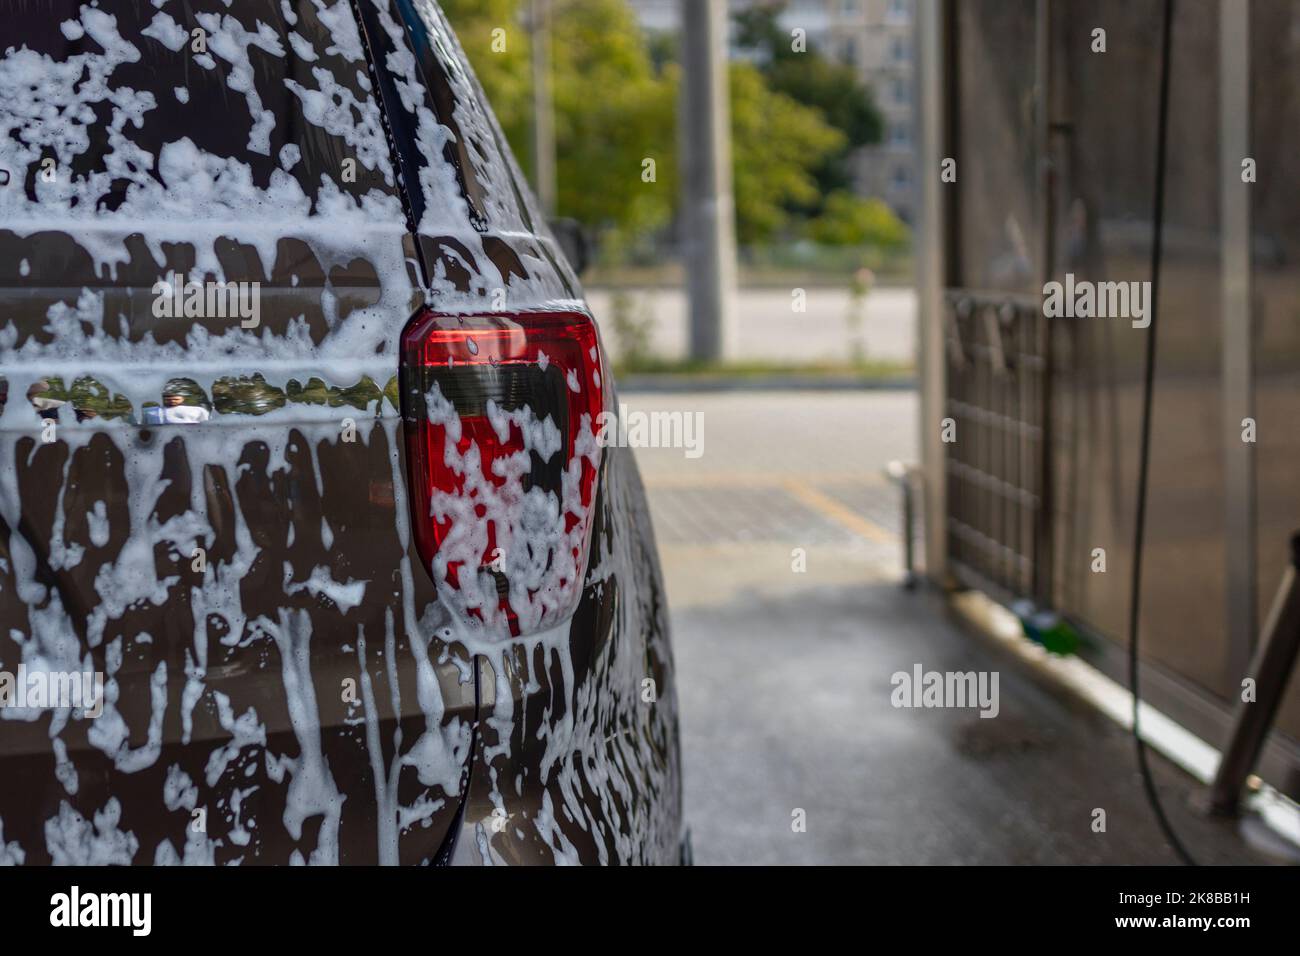 la butée arrière de la voiture est recouverte de mousse de savon . lavage de voiture en libre-service Banque D'Images